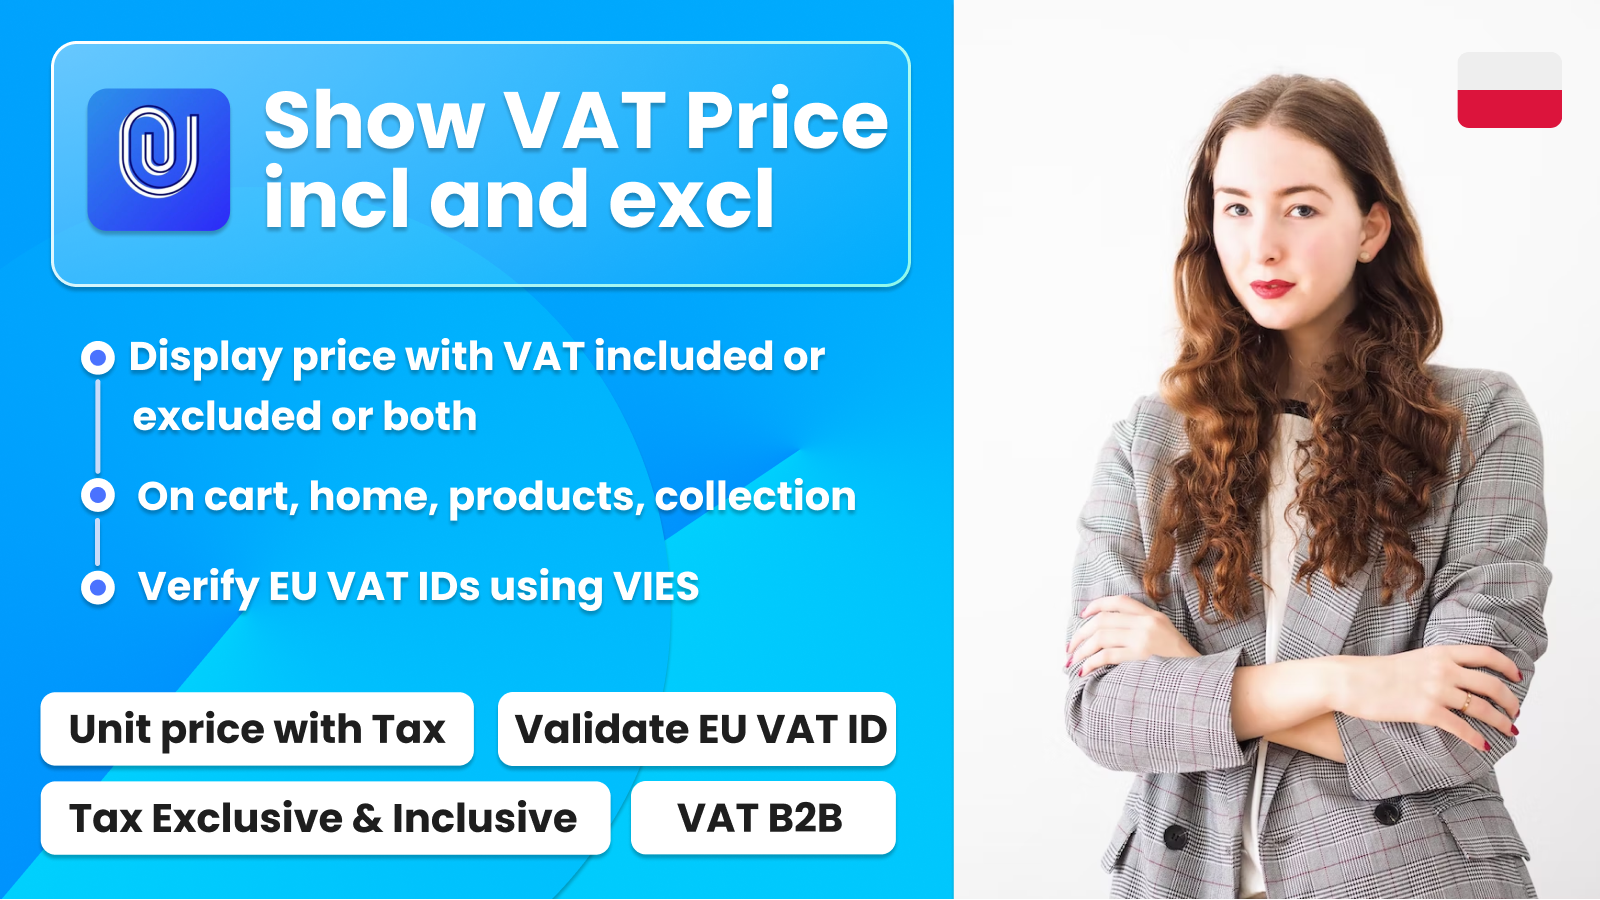 Zatwierdź VAT i Pokaż ceny netto/brutto VAT Compliance